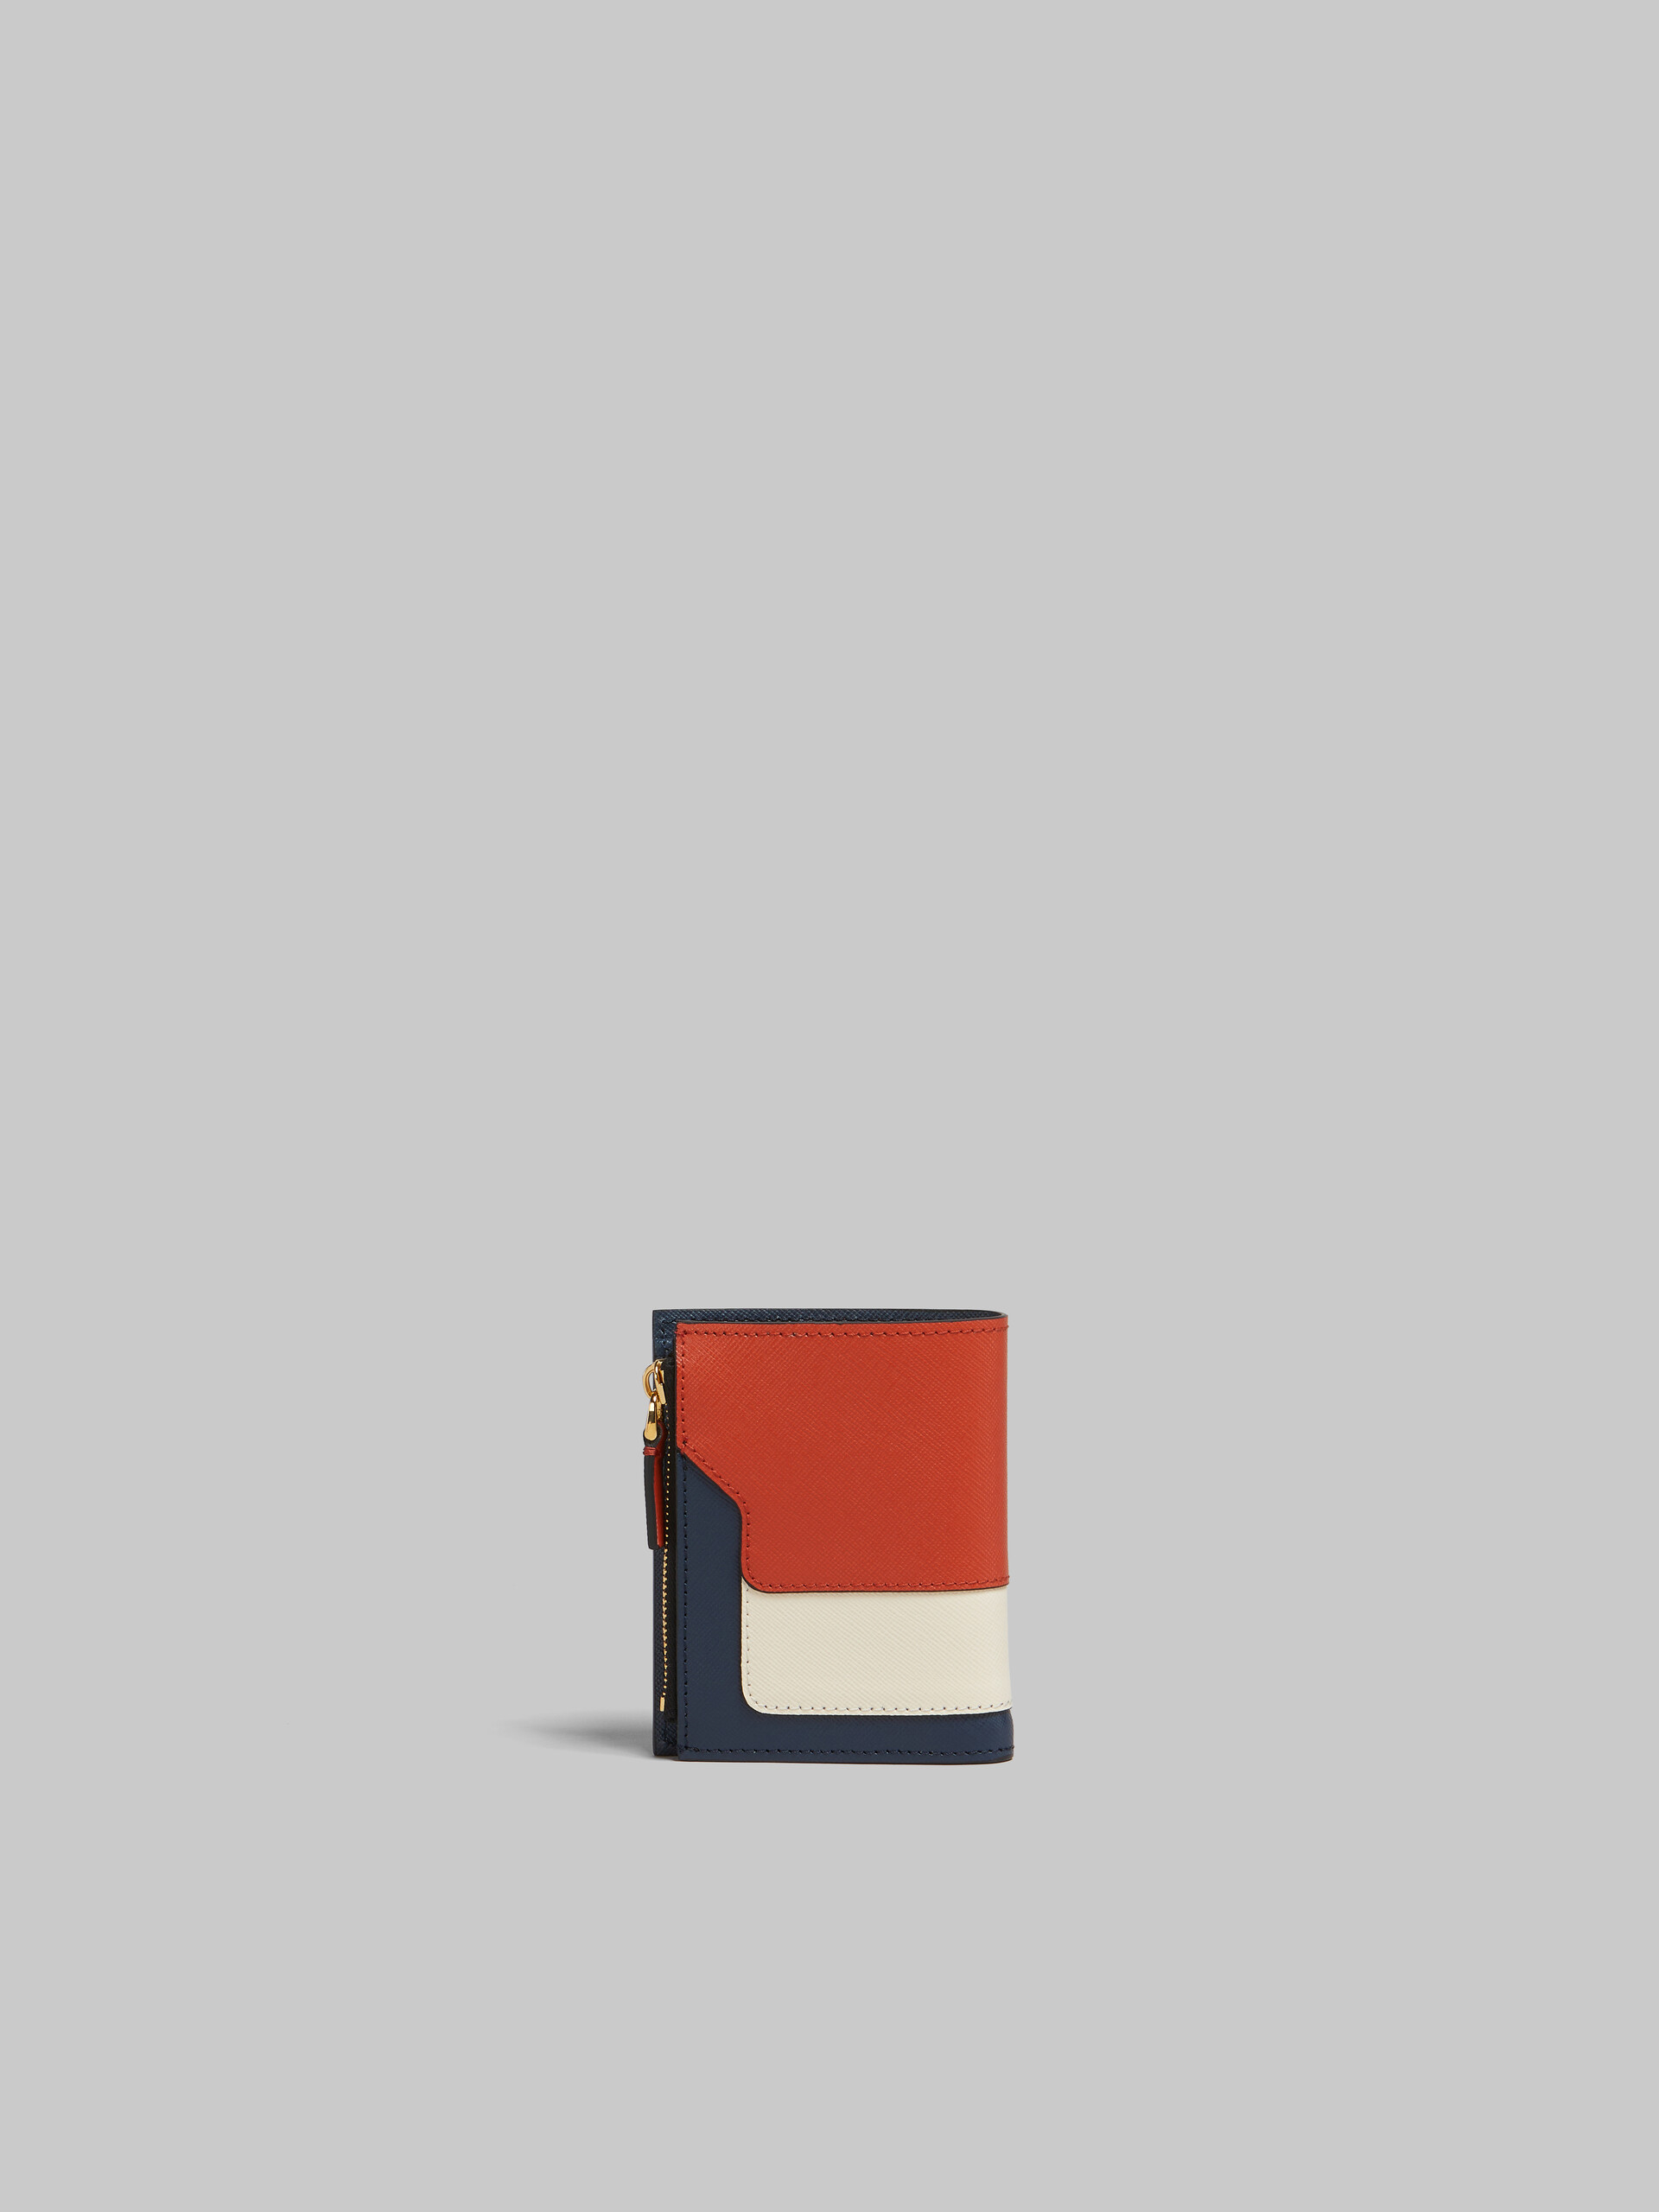 オレンジ クリーム ディープブルー サフィアーノレザー製 二つ折りウォレット - 財布 - Image 3